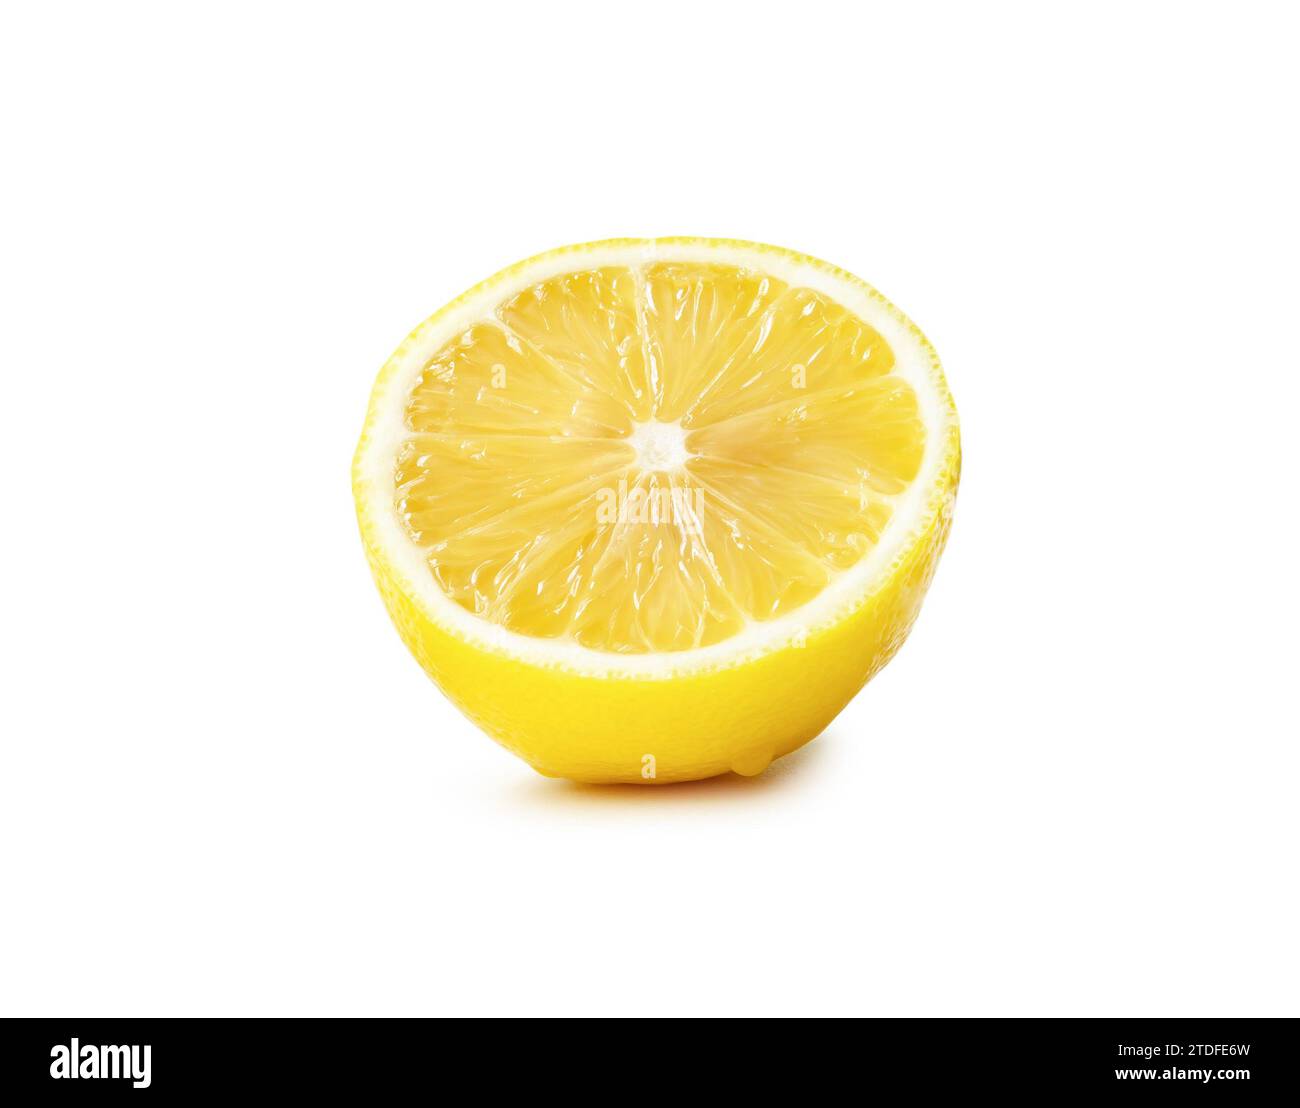 La metà fresca del limone giallo è isolata su sfondo bianco con percorso di ritaglio. Foto Stock